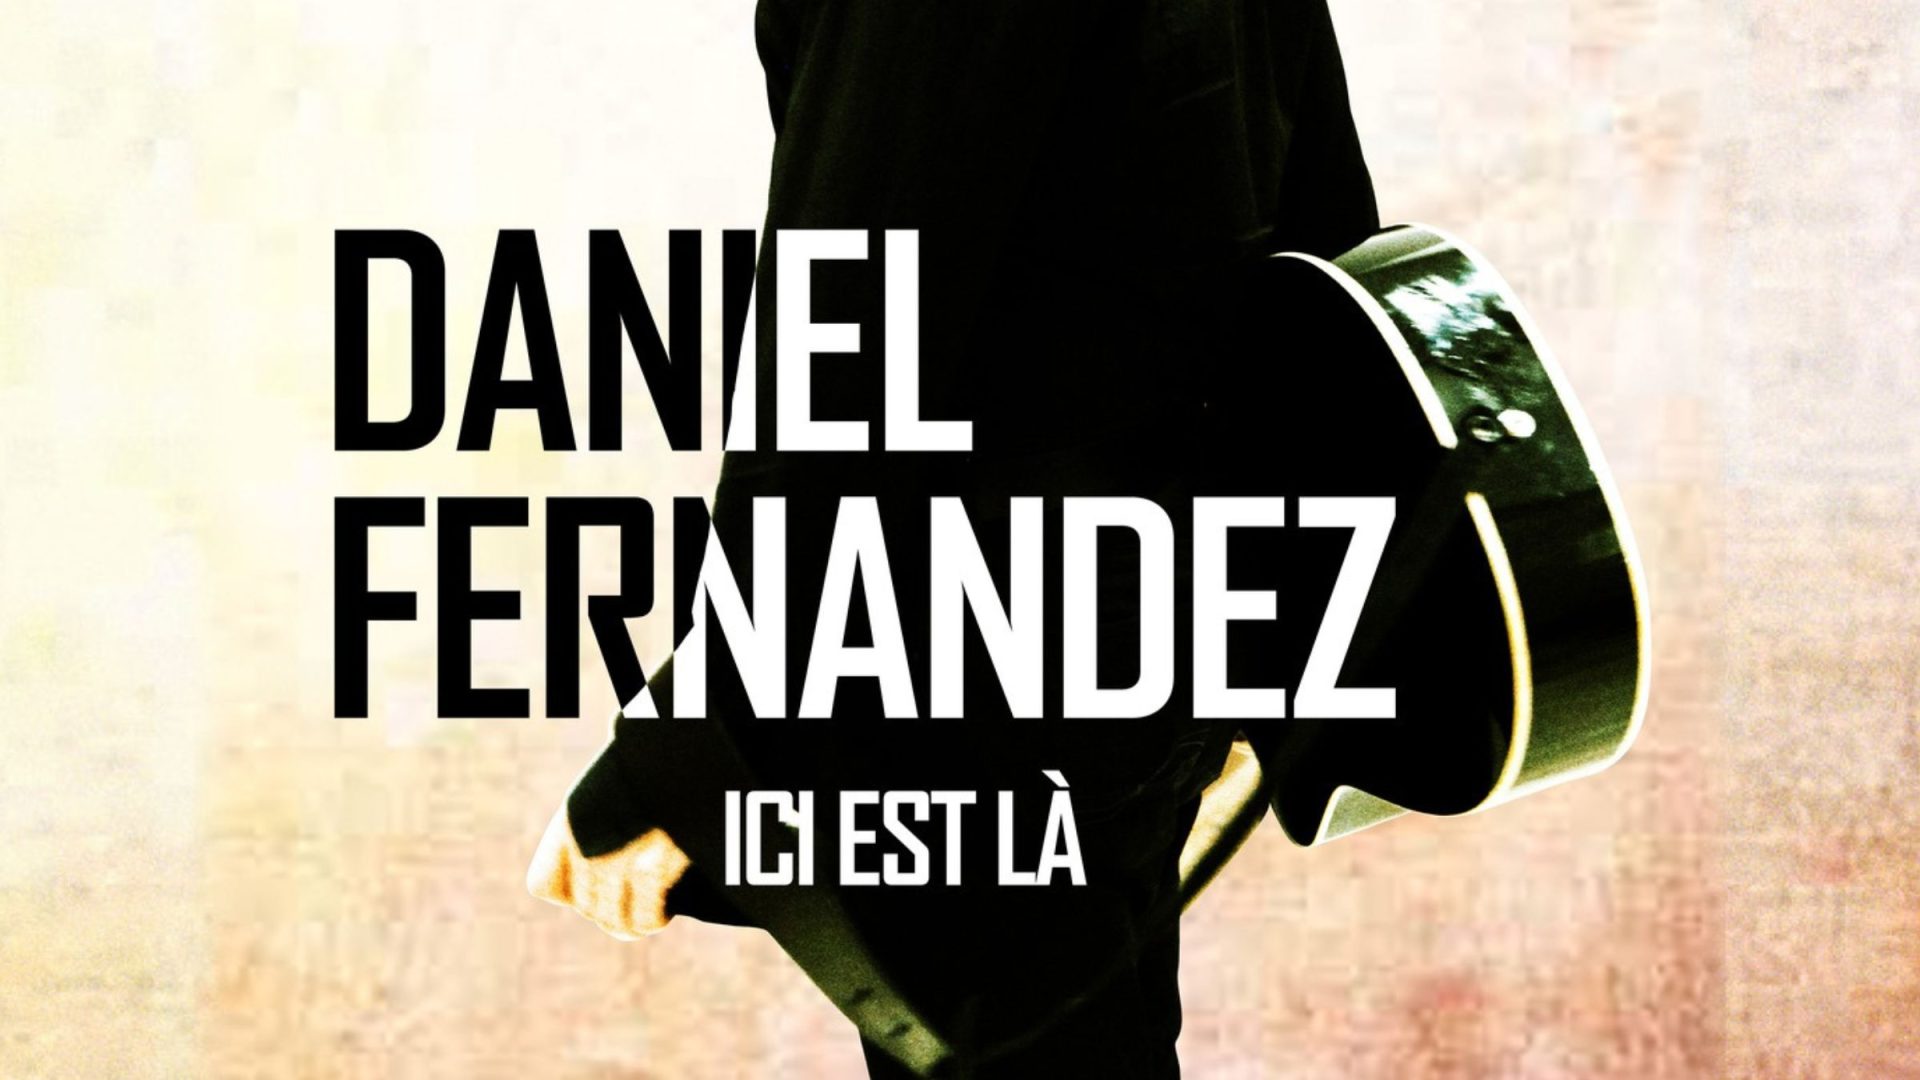 Le concert de Daniel Fernandez ce samedi à la Foire de Montbard